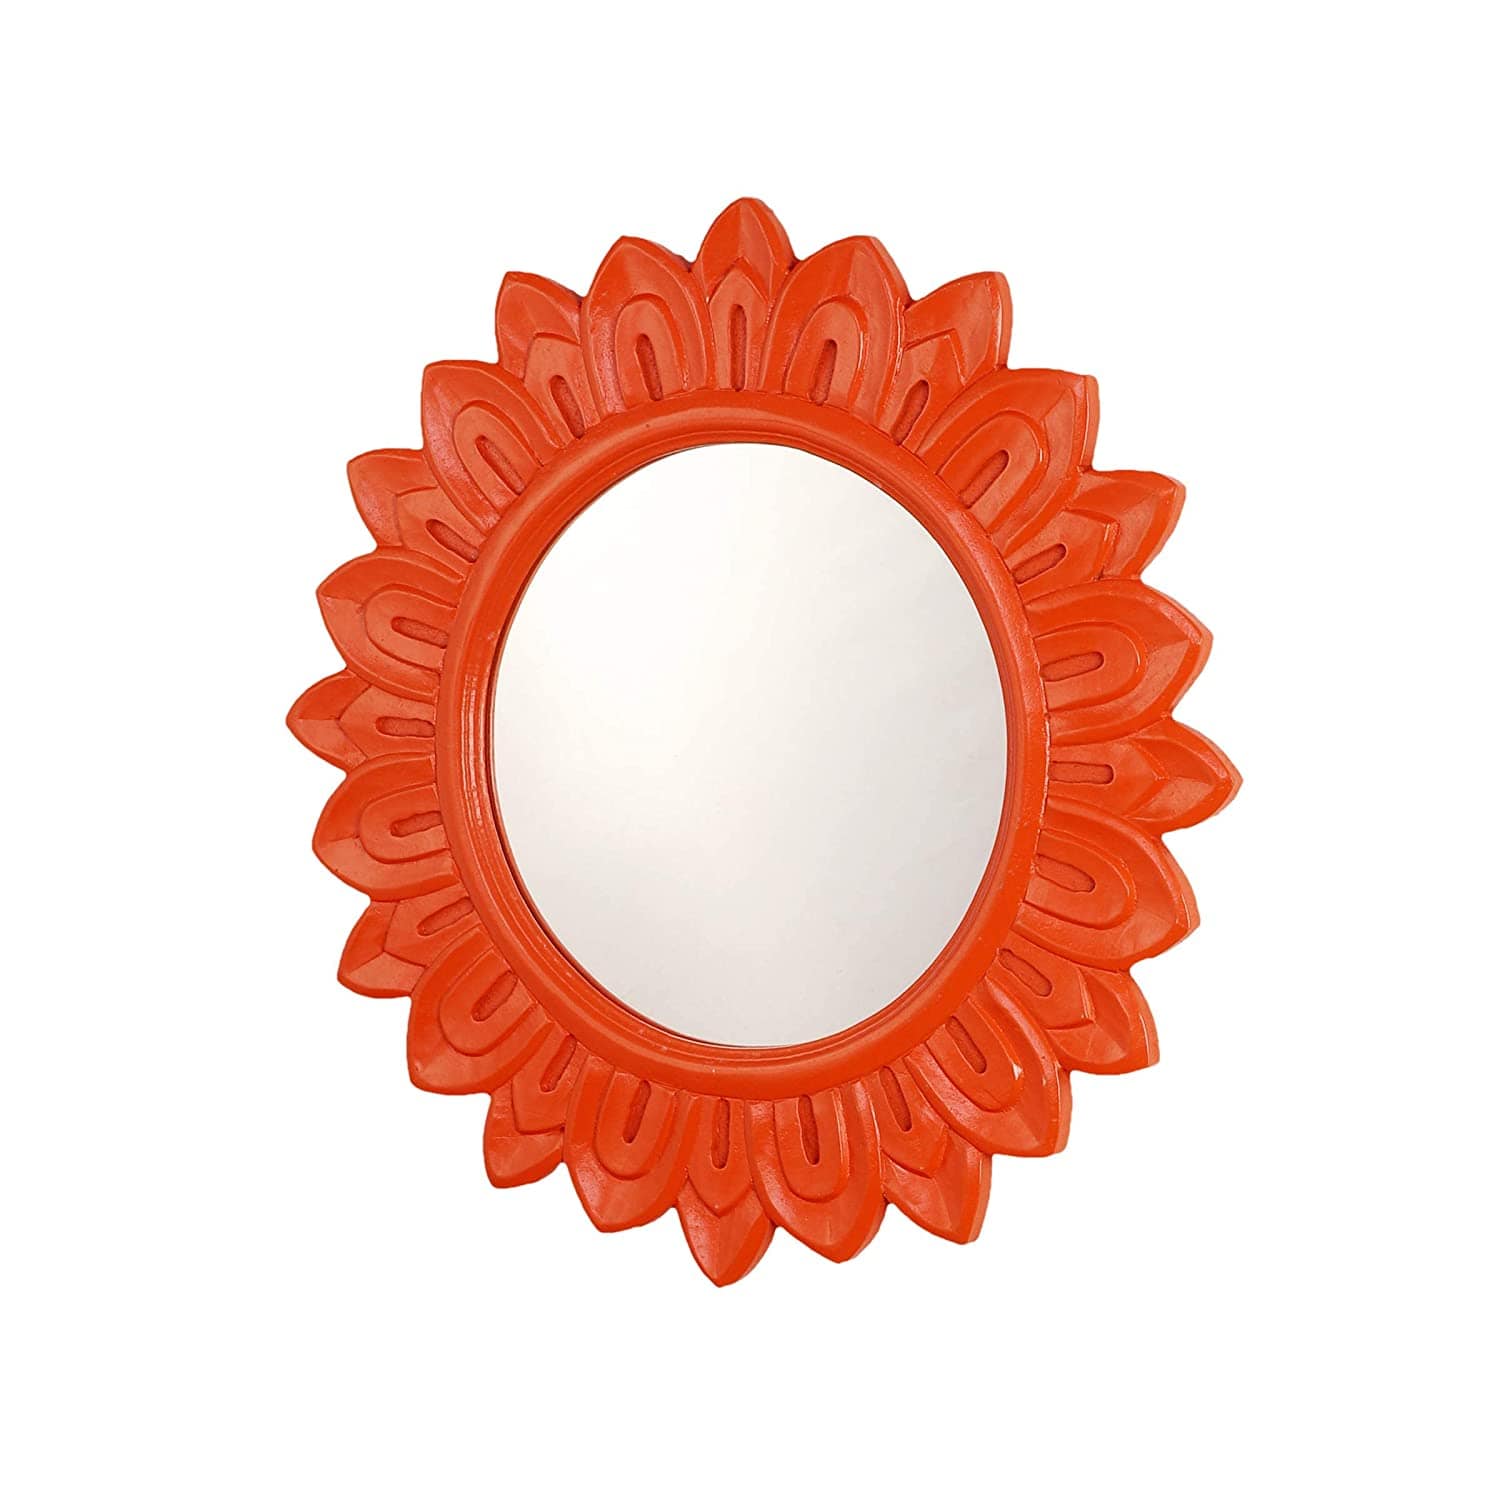 Handcrafted Wood Wall Mirror (50.8 cm x 50.8 cm x 2.5 cm, Orange)